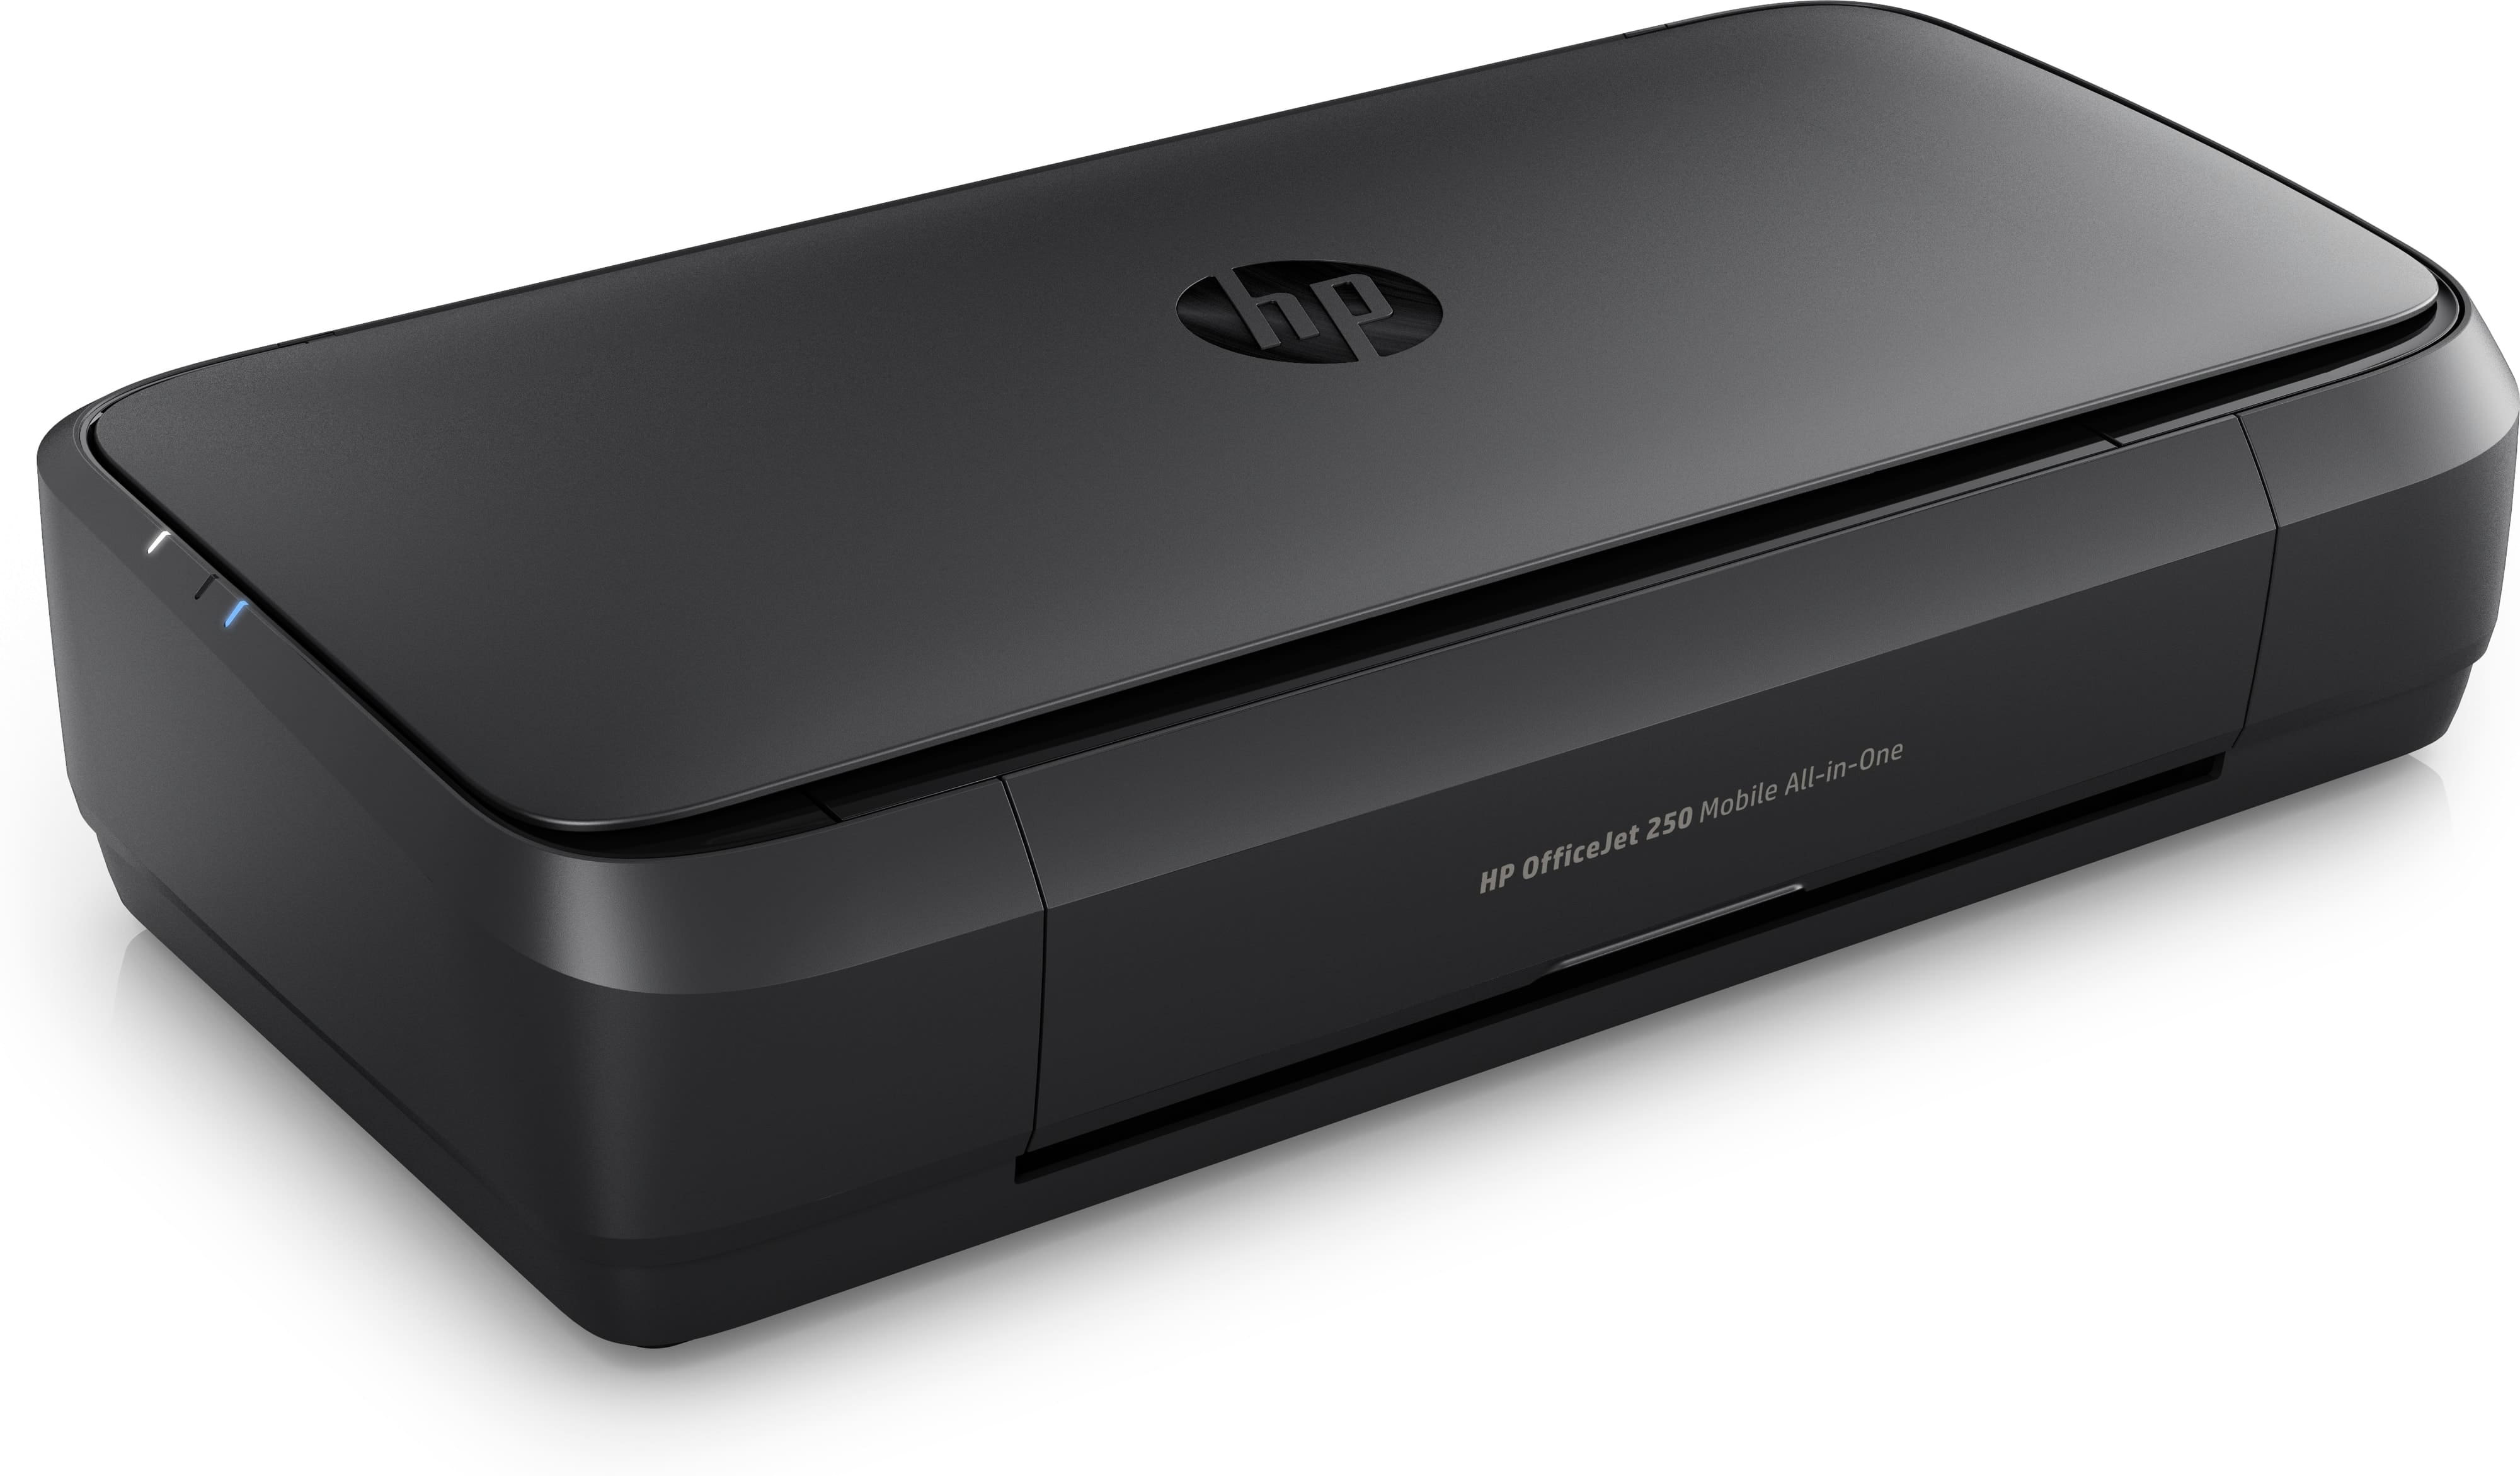 HP Tintenstrahldrucker Officejet 250 